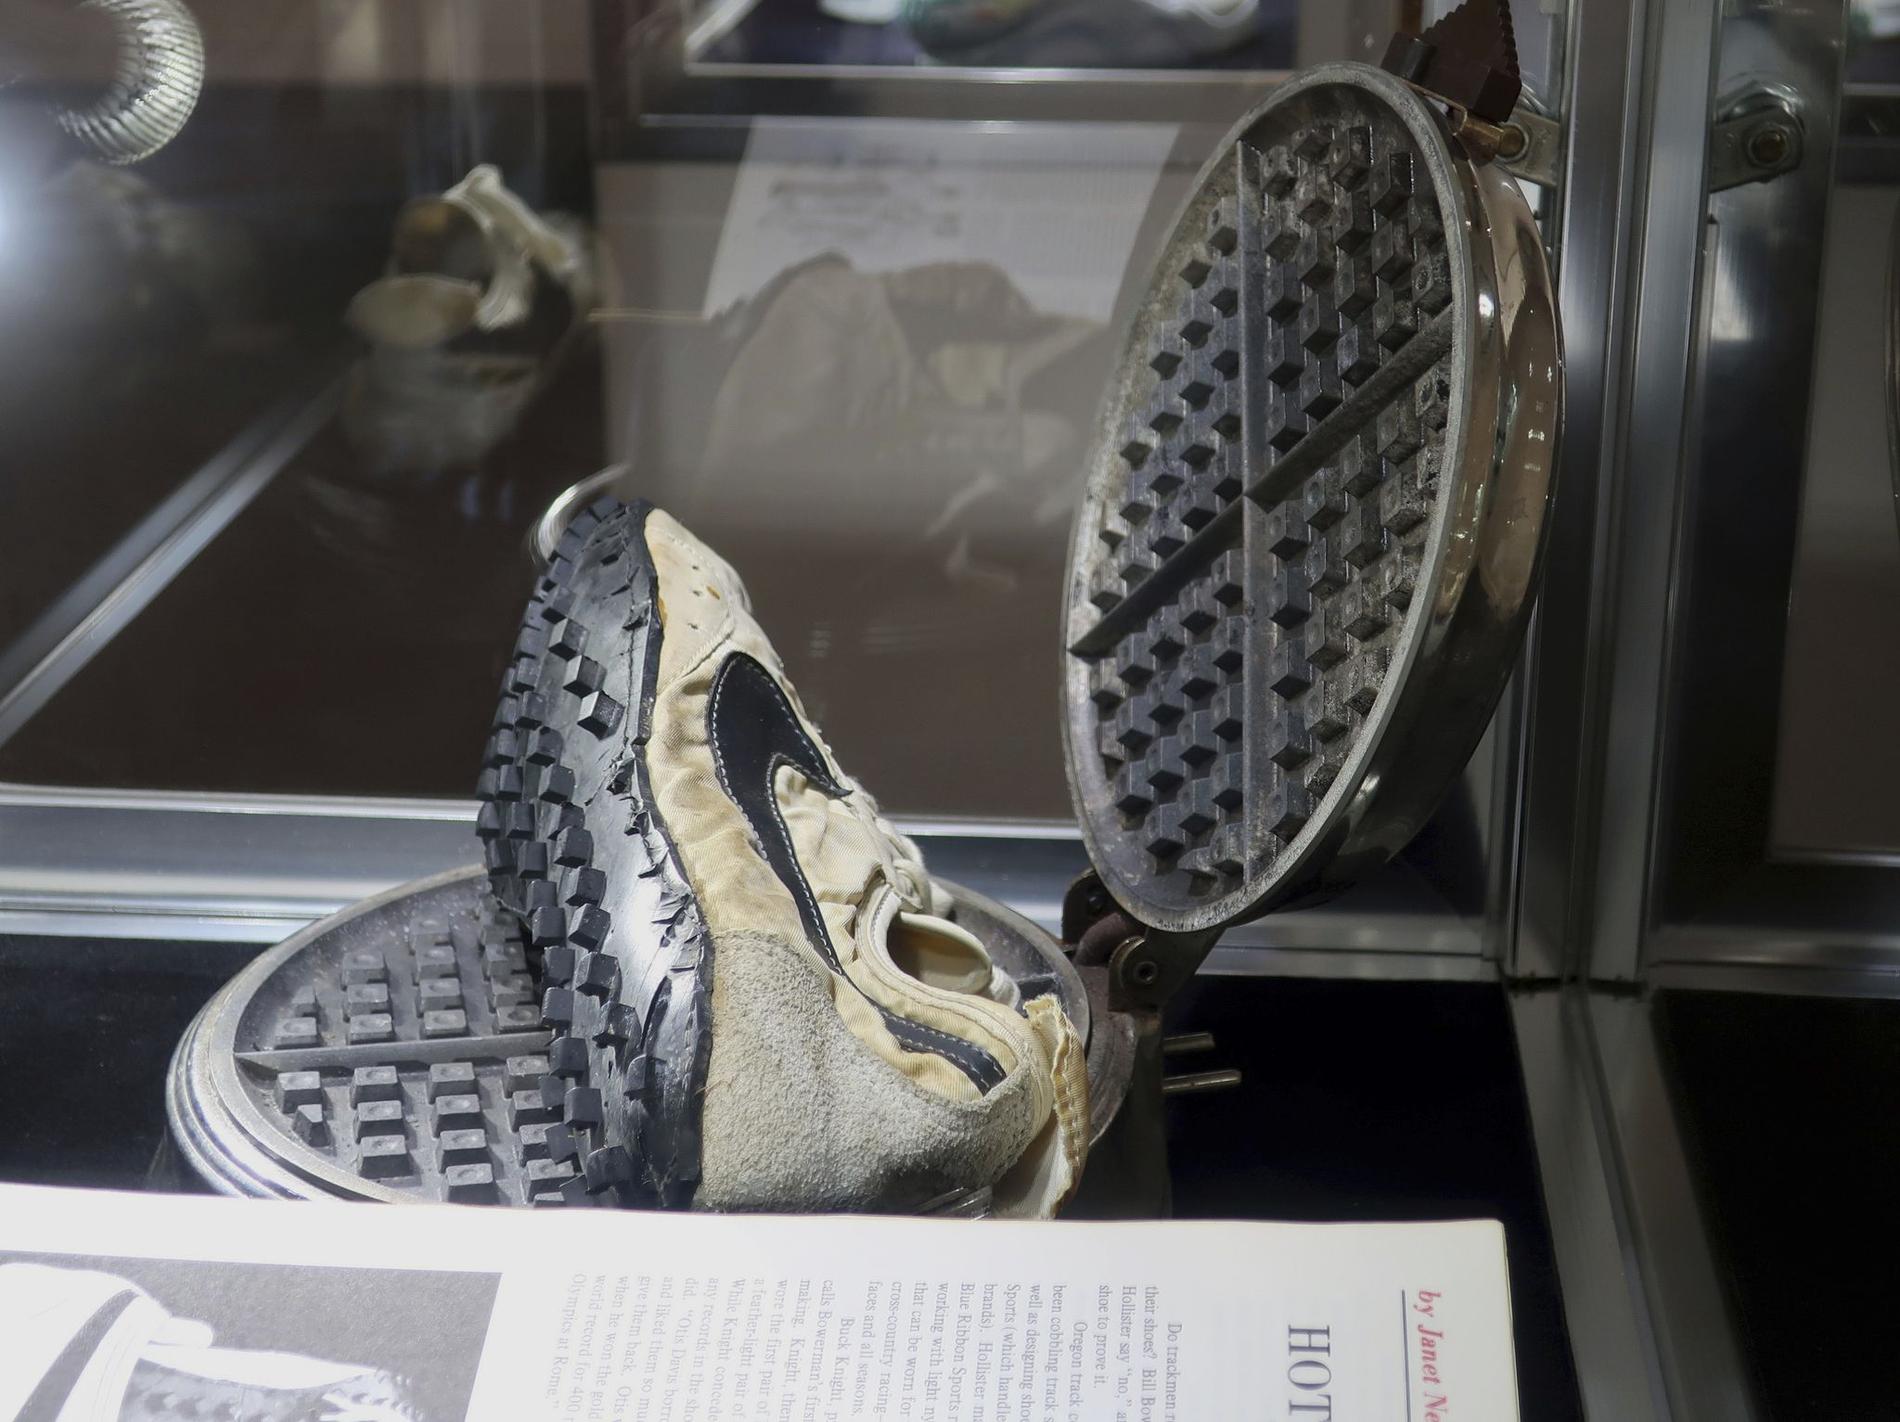 «Måneskoene» er designet av Nikes medstifter Bill Bowerman. Han brukte konas vaffeljern som inspirasjon da han designet skosålen, ifølge nyhetsbyrået AP.